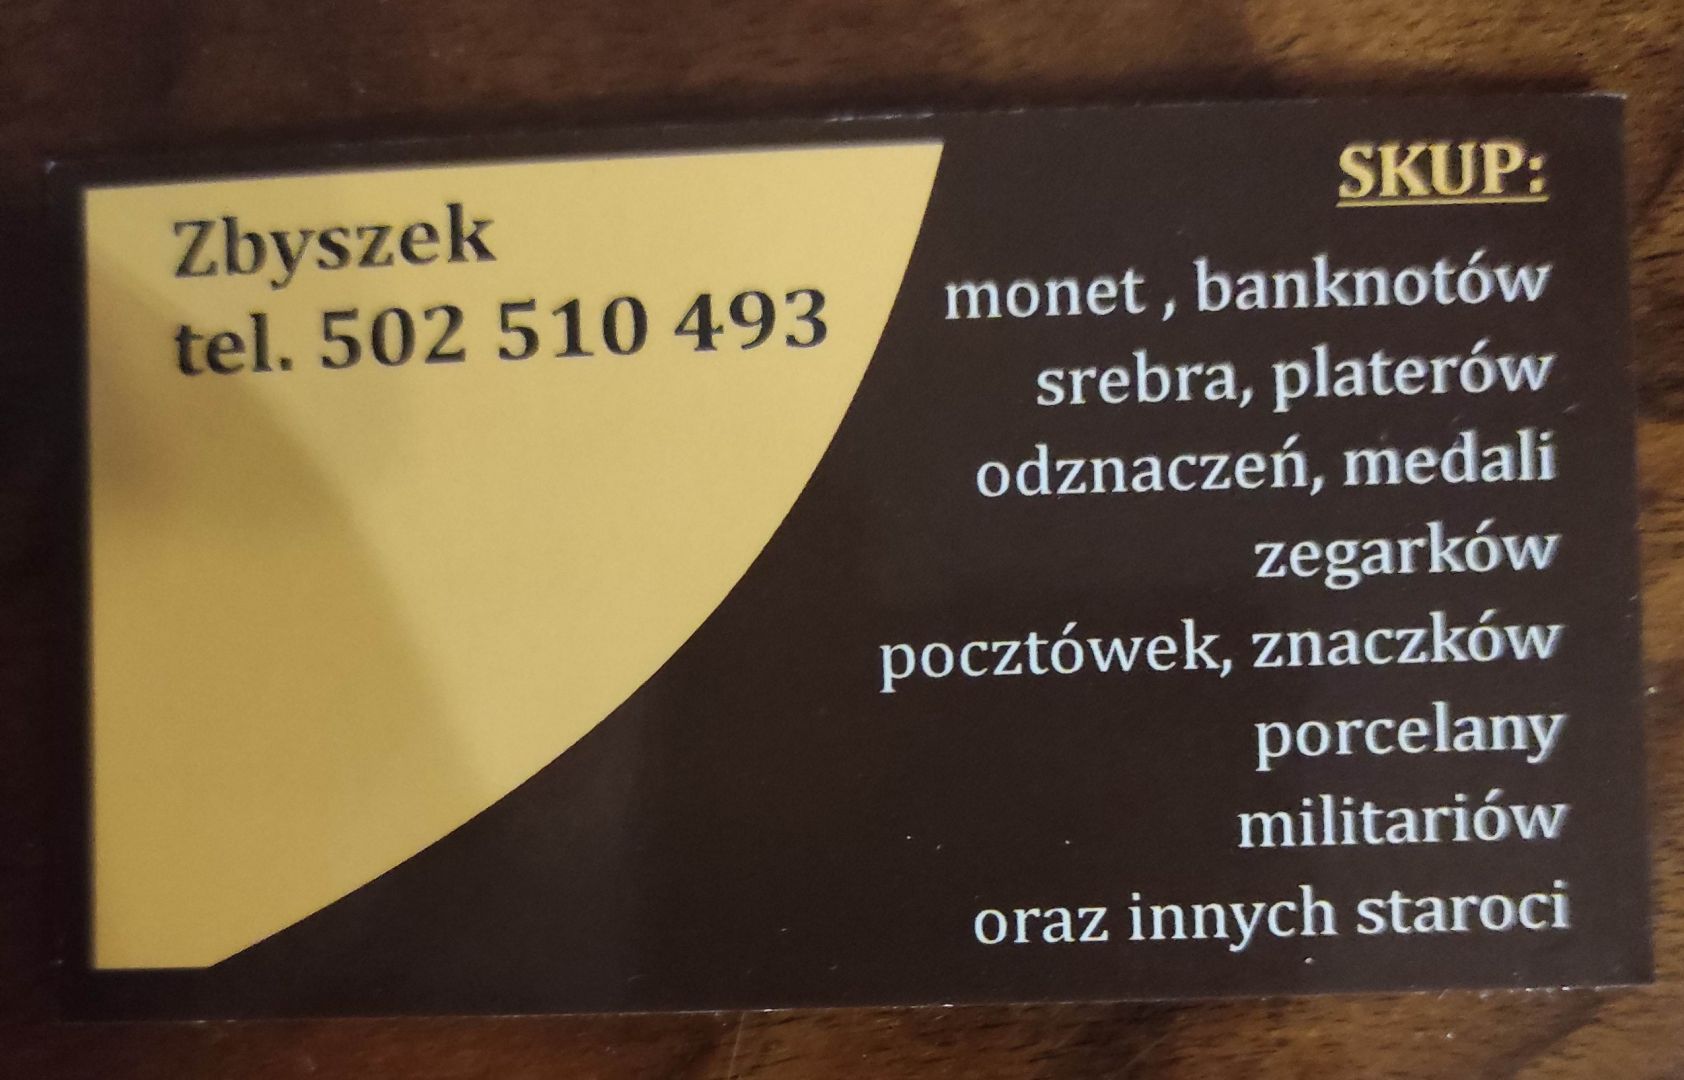 Kupię srebro militaria płyty winylowe inne starocia Warszawa - Zdjęcie 1